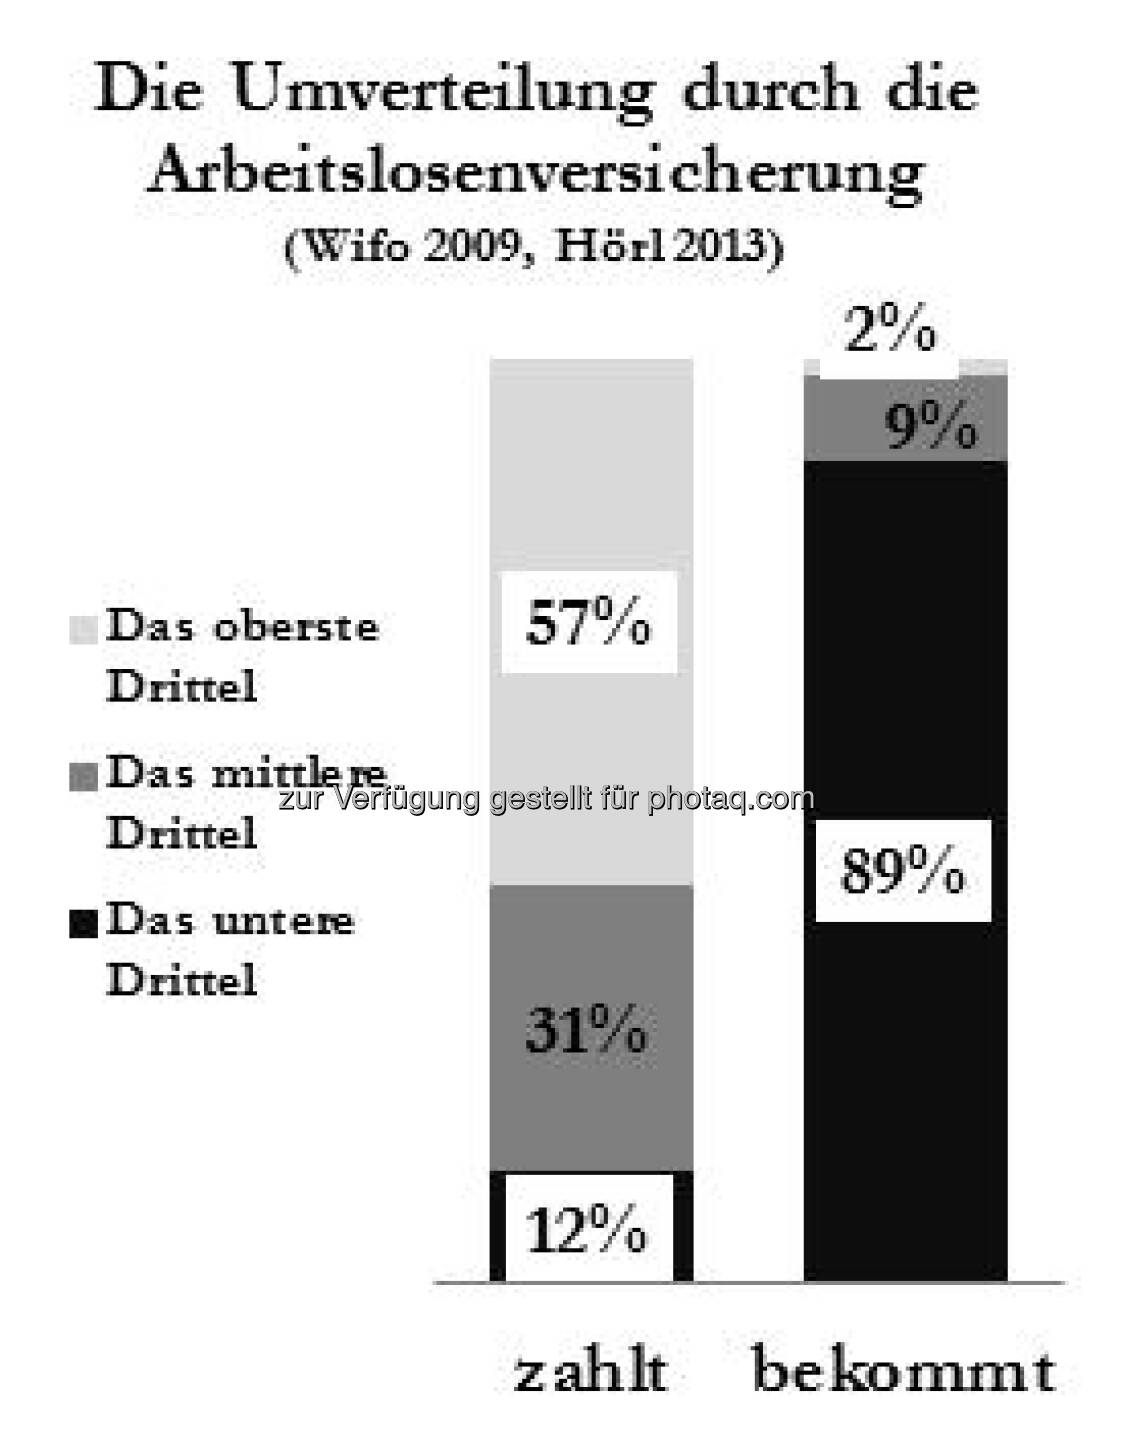 Die Umverteilung durch die Arbeitslosenversicherung, Grafik bei Michael Hörl, siehe auch http://www.christian-drastil.com/2013/03/26/vermogenimmobilien-wien-fordert-kluft-zwischen-arm-und-reich-michael-horl/